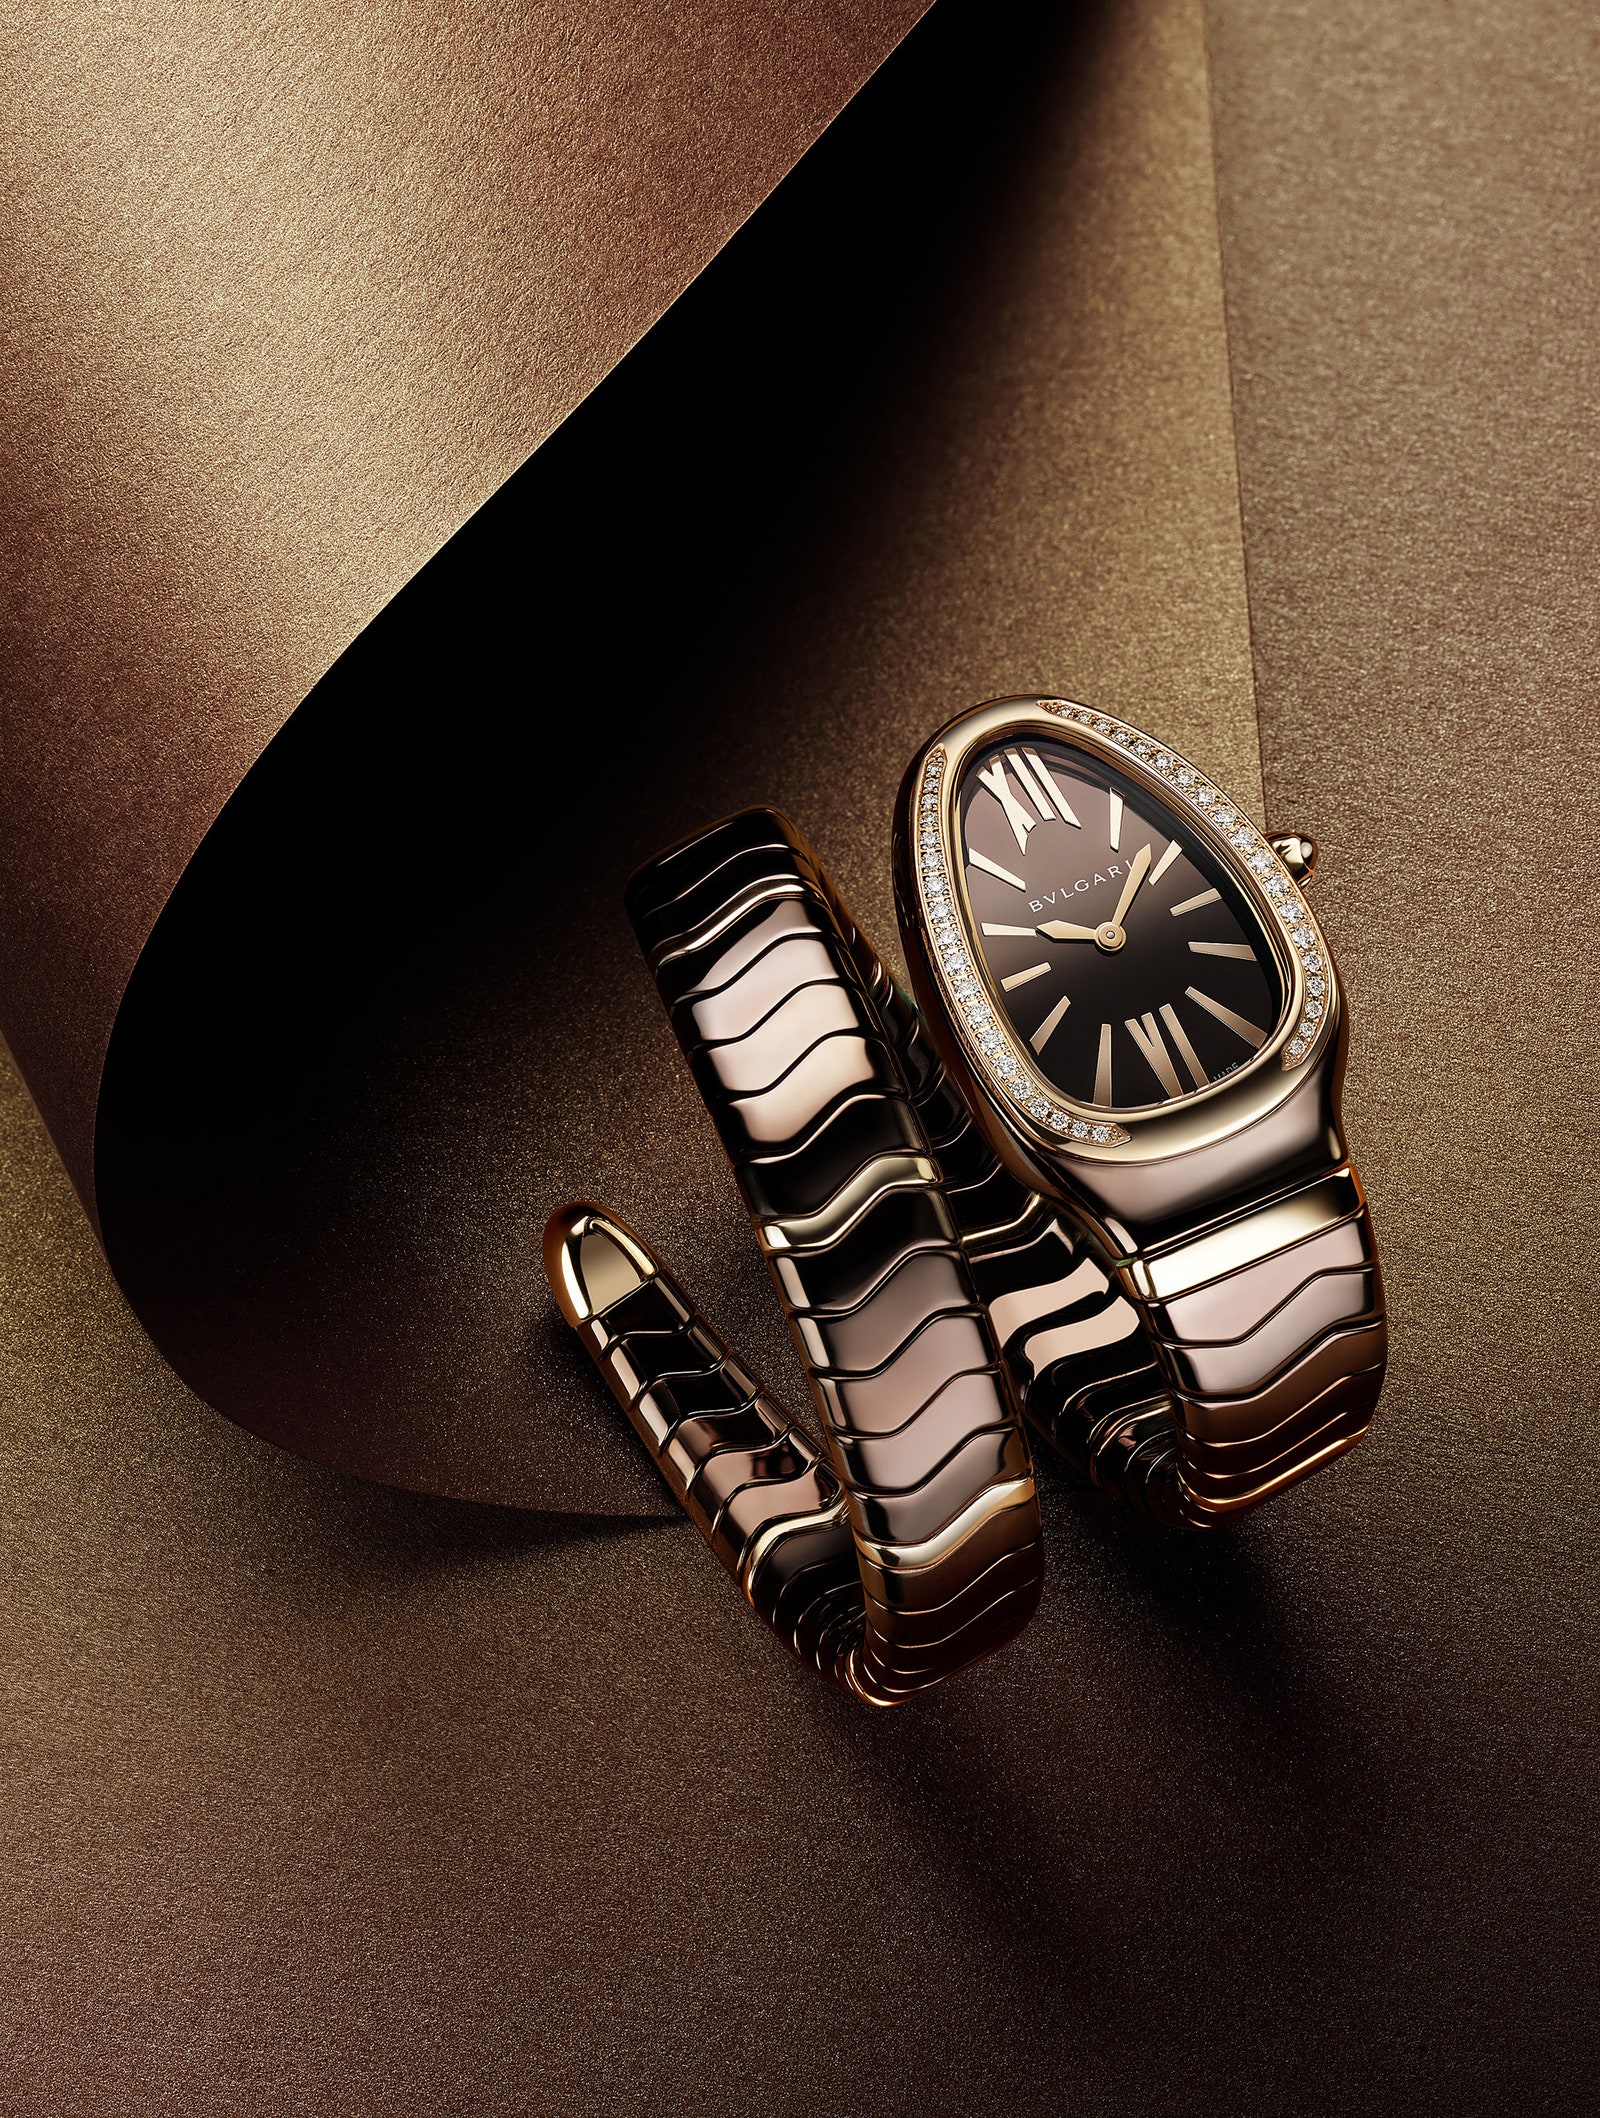 Часы Serpenti Spiga Bvlgari с браслетом из розового золота и керамики.